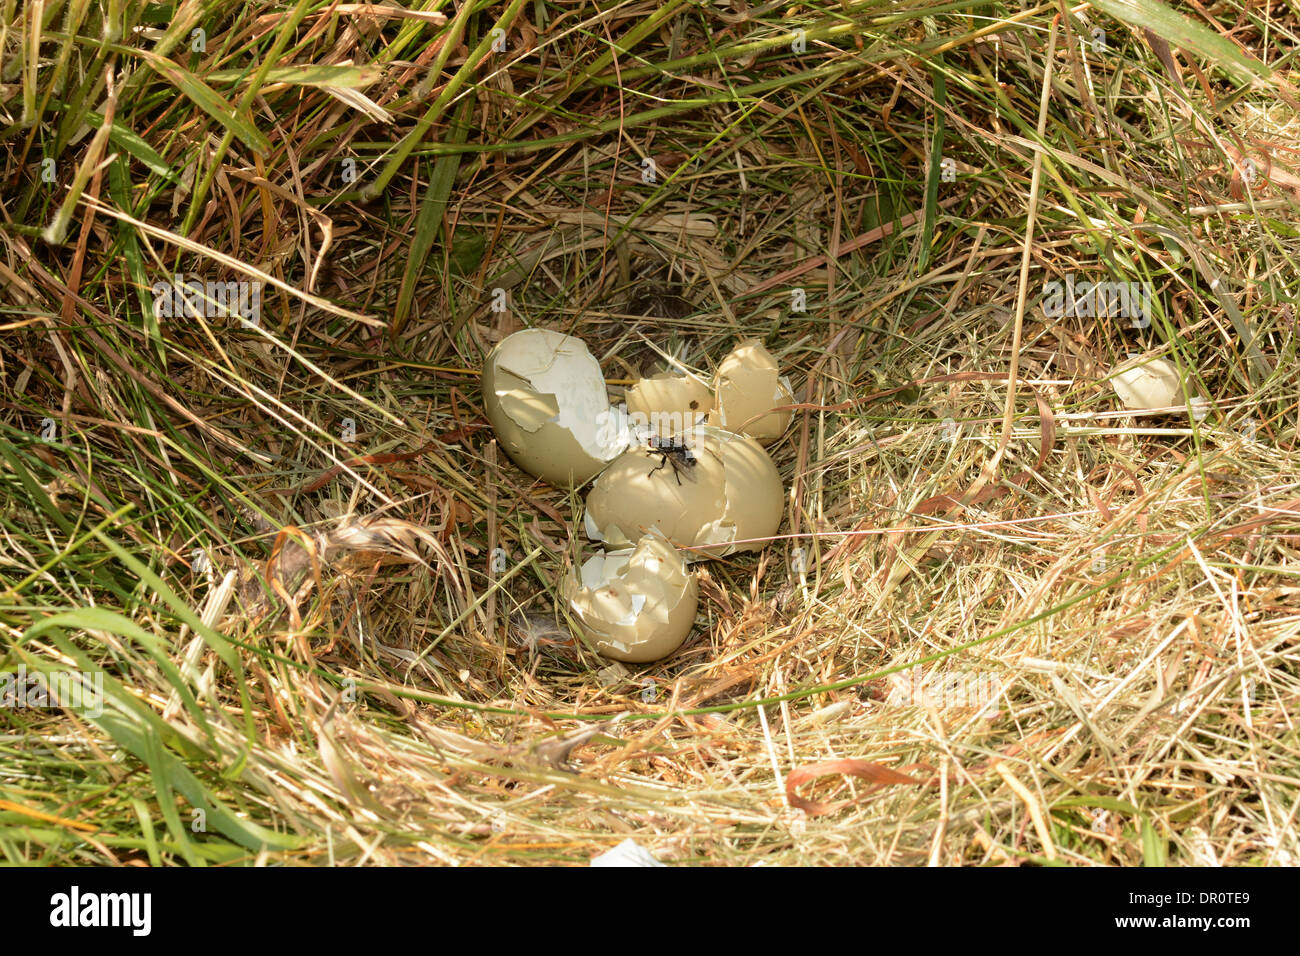 Faisán común (Phasianus colchicus) empy las cáscaras de los huevos en el nido después de ataque de Fox, Oxfordshire, Inglaterra, Julio Foto de stock